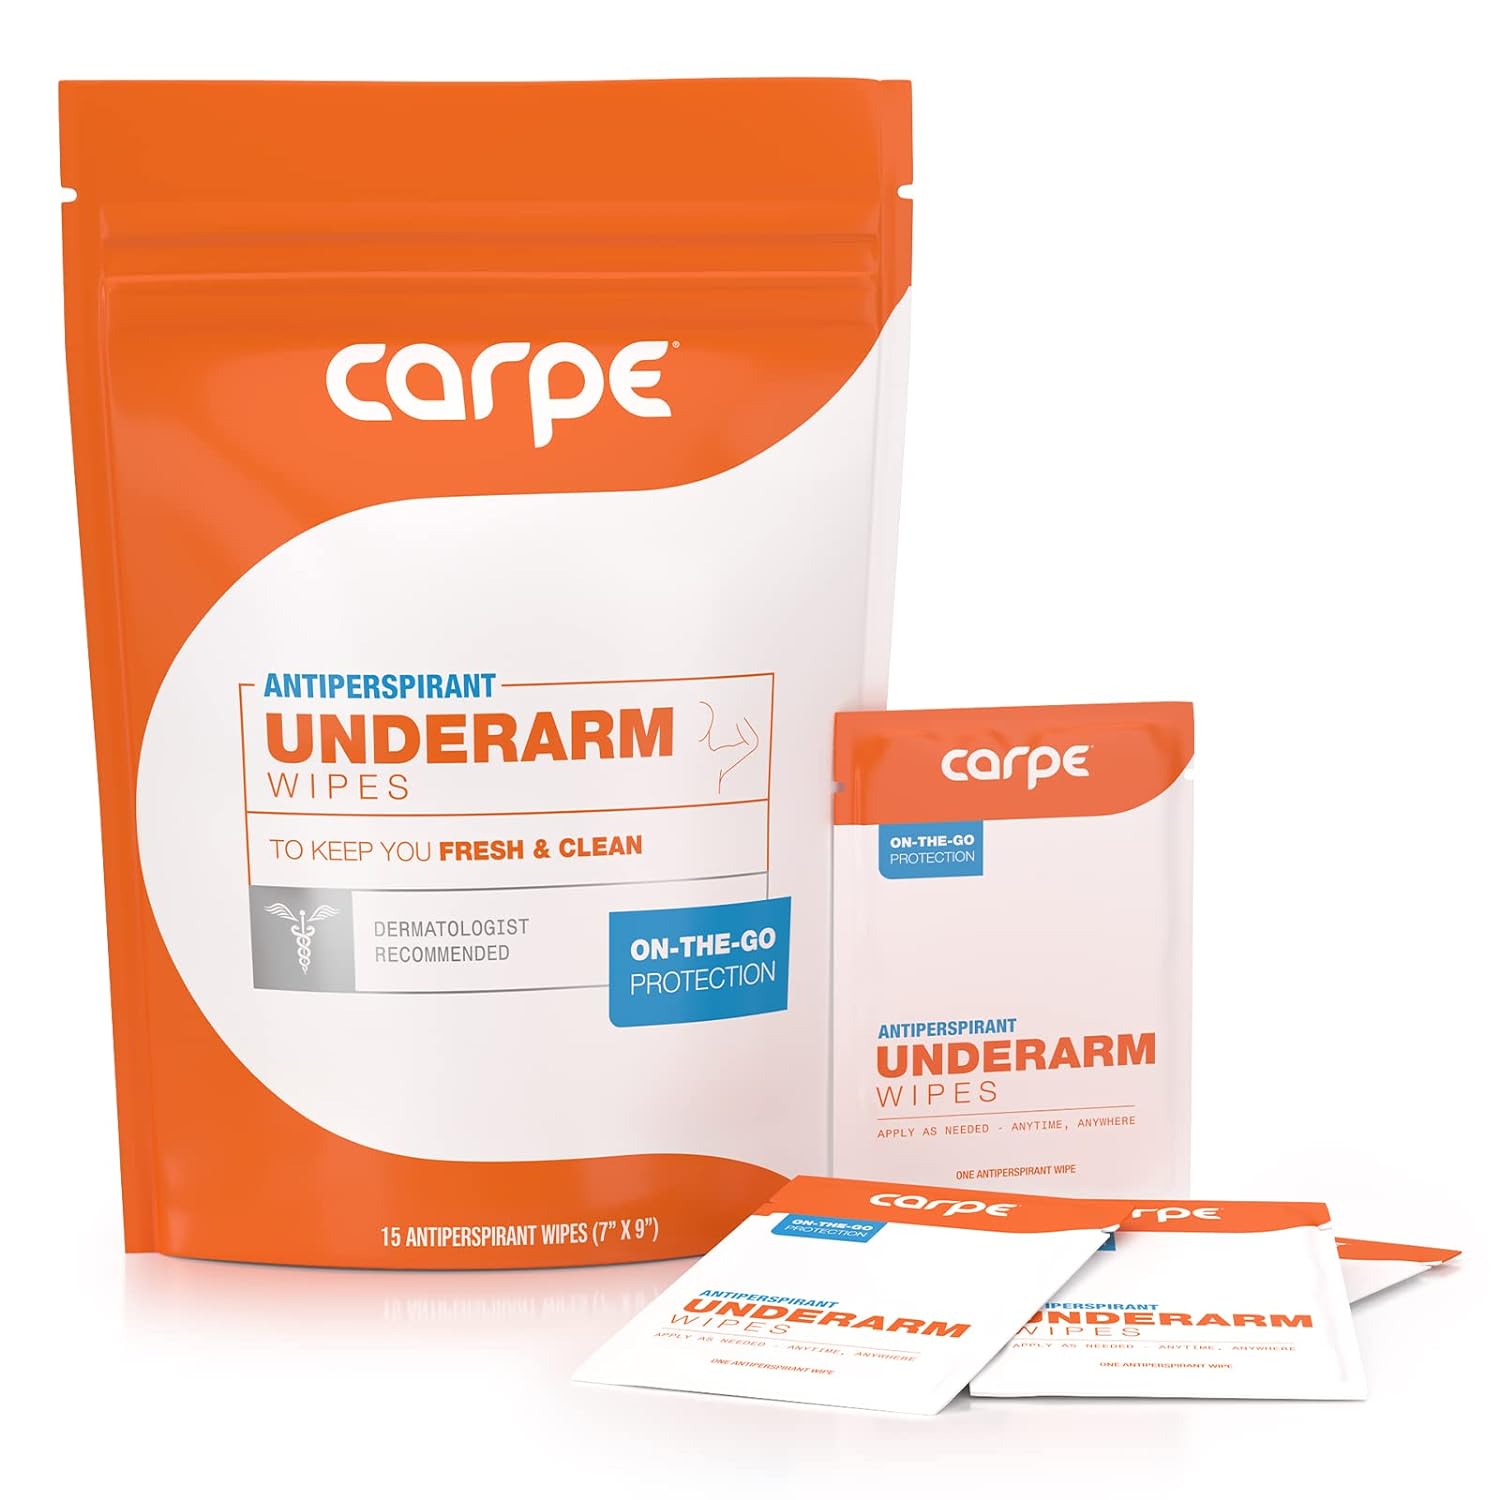 Carpe Antiperspirant Underarm Wipes for …